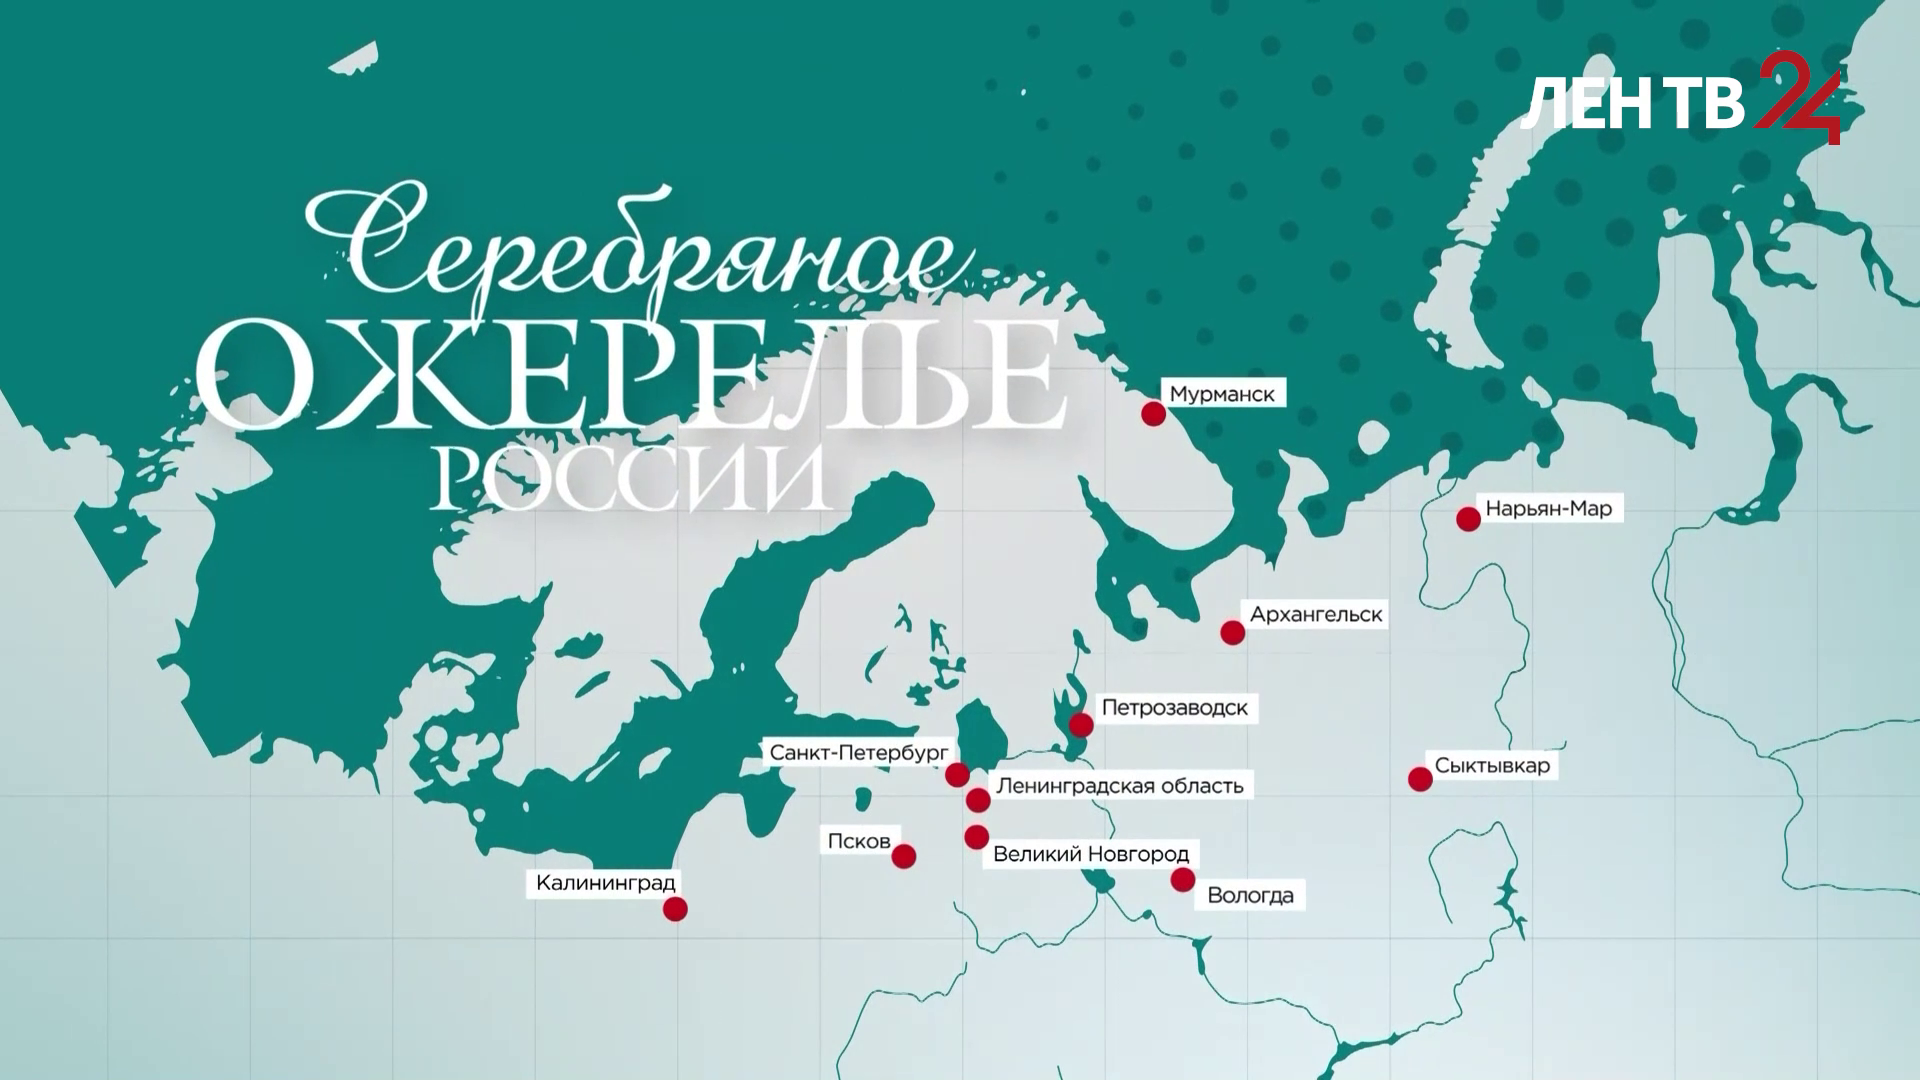 Карелия | Медиа экспедиция «Серебряное ожерелье России» | Достопримечательности